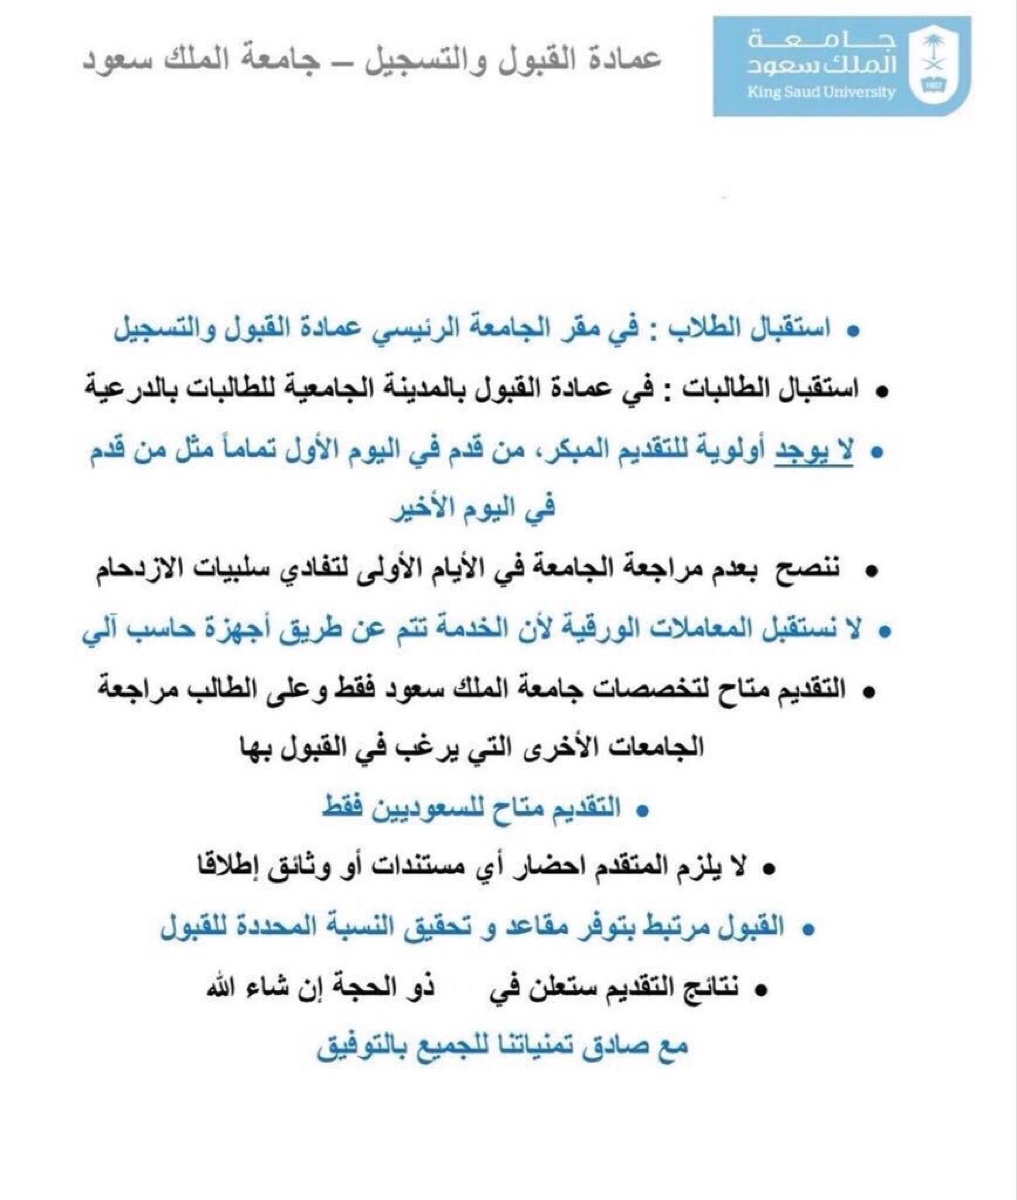 التسجيل الالحاقي جامعة الملك سعود